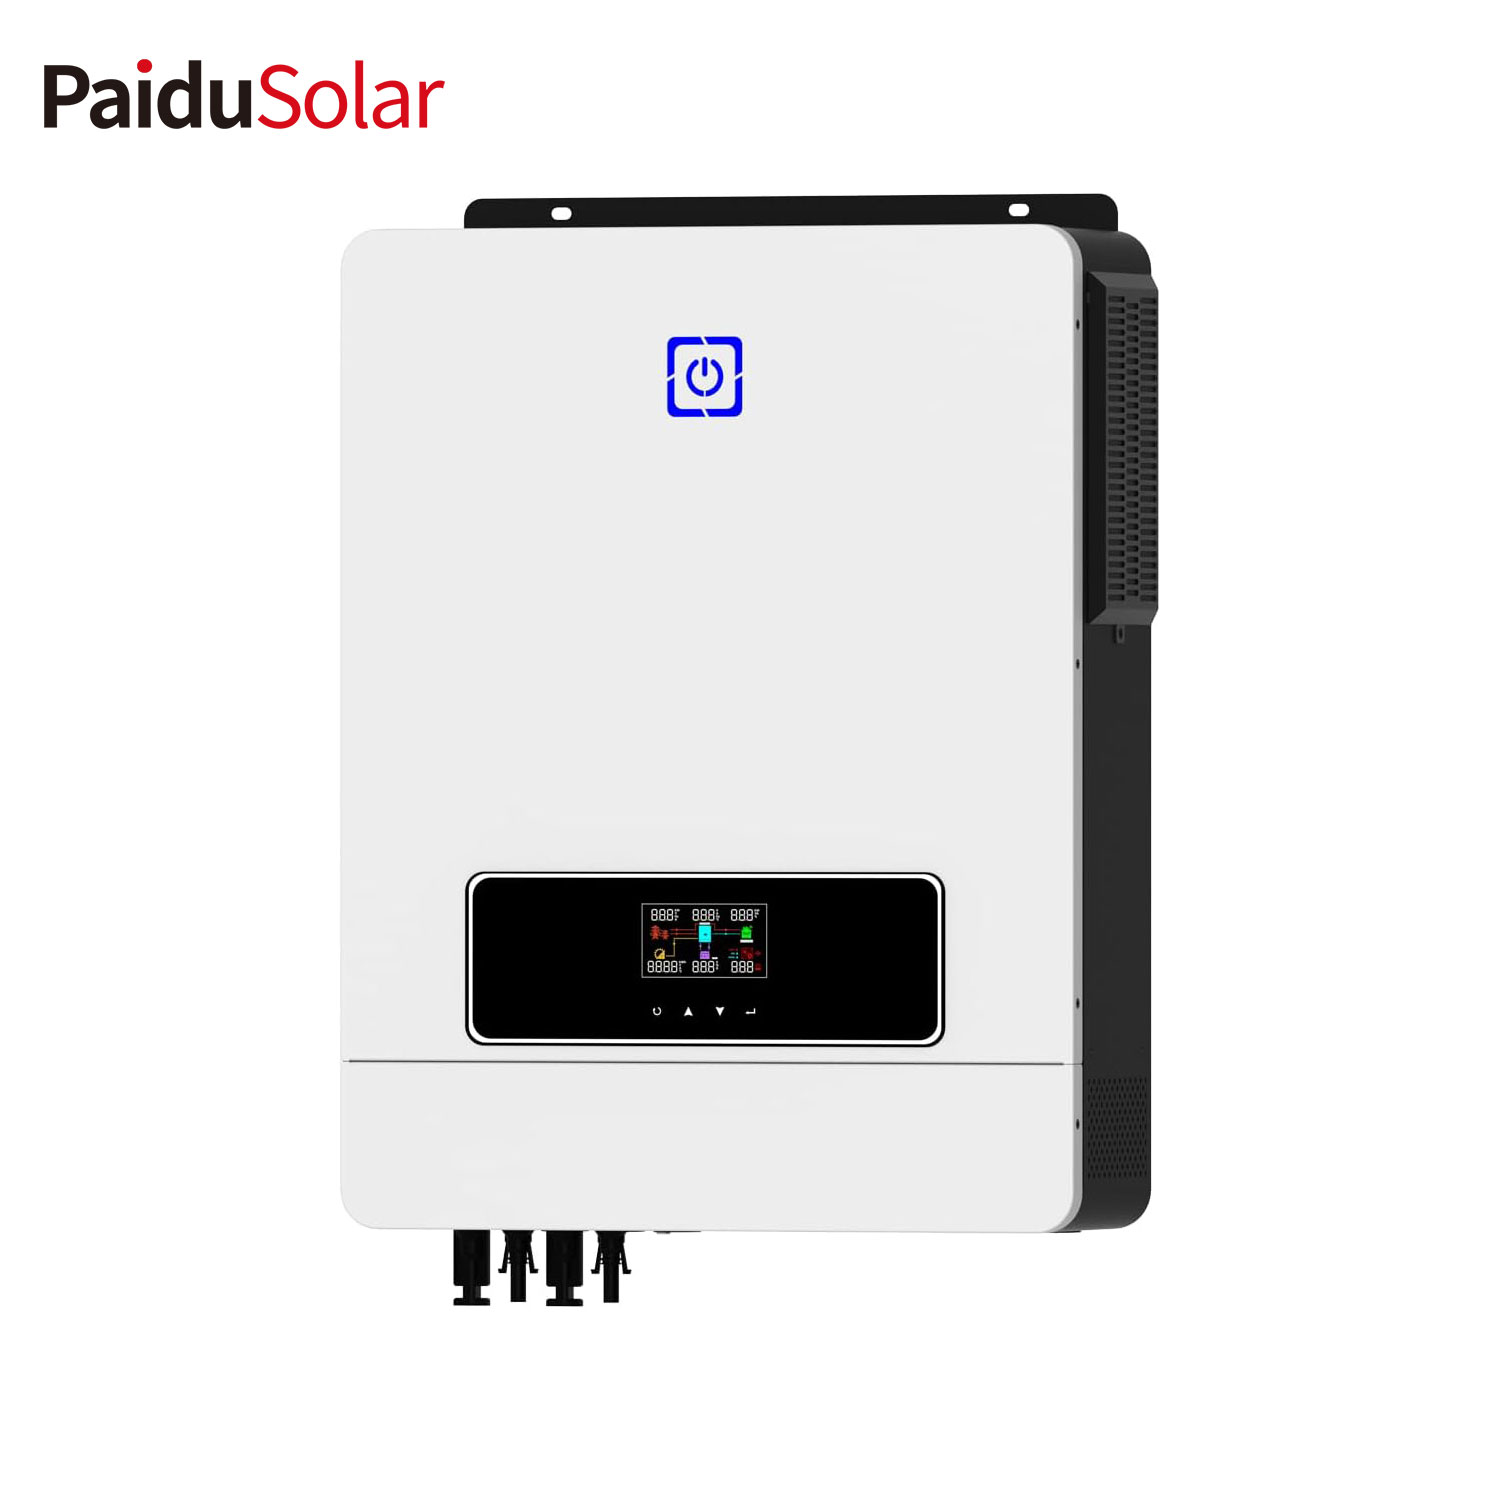 PaiduSolar 8.2KW Biến tần lai năng lượng mặt trời tích hợp bộ điều khiển sạc và biến tần sóng sin tinh khiết để lưu trữ năng lượng tại nhà